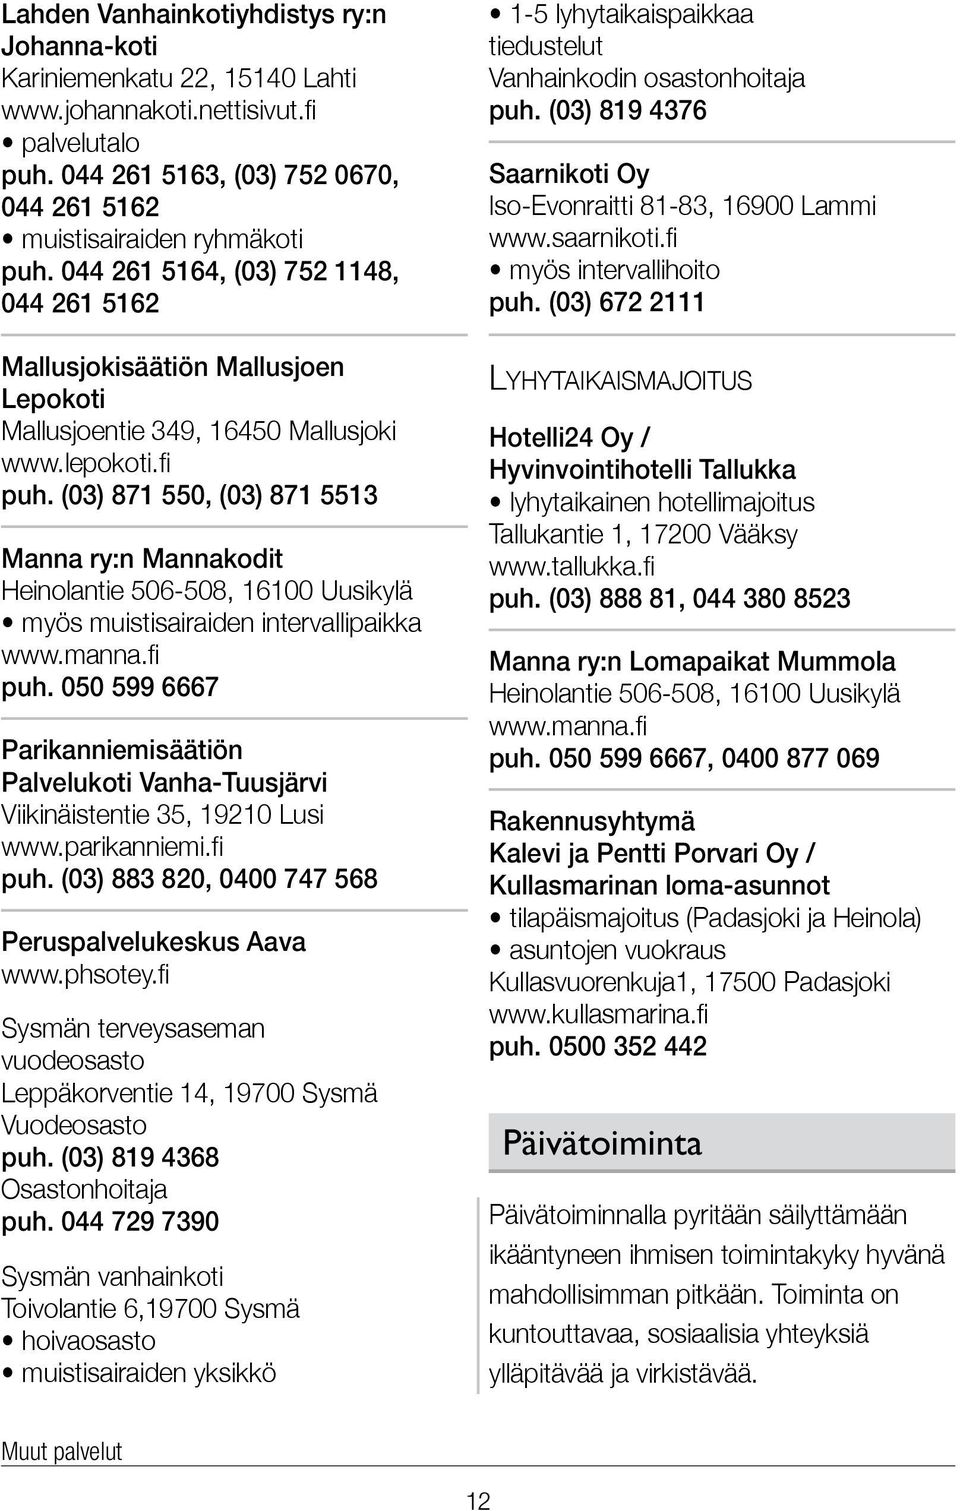 (03) 871 550, (03) 871 5513 Manna ry:n Mannakodit Heinolantie 506-508, 16100 Uusikylä myös muistisairaiden intervallipaikka www.manna.fi puh.